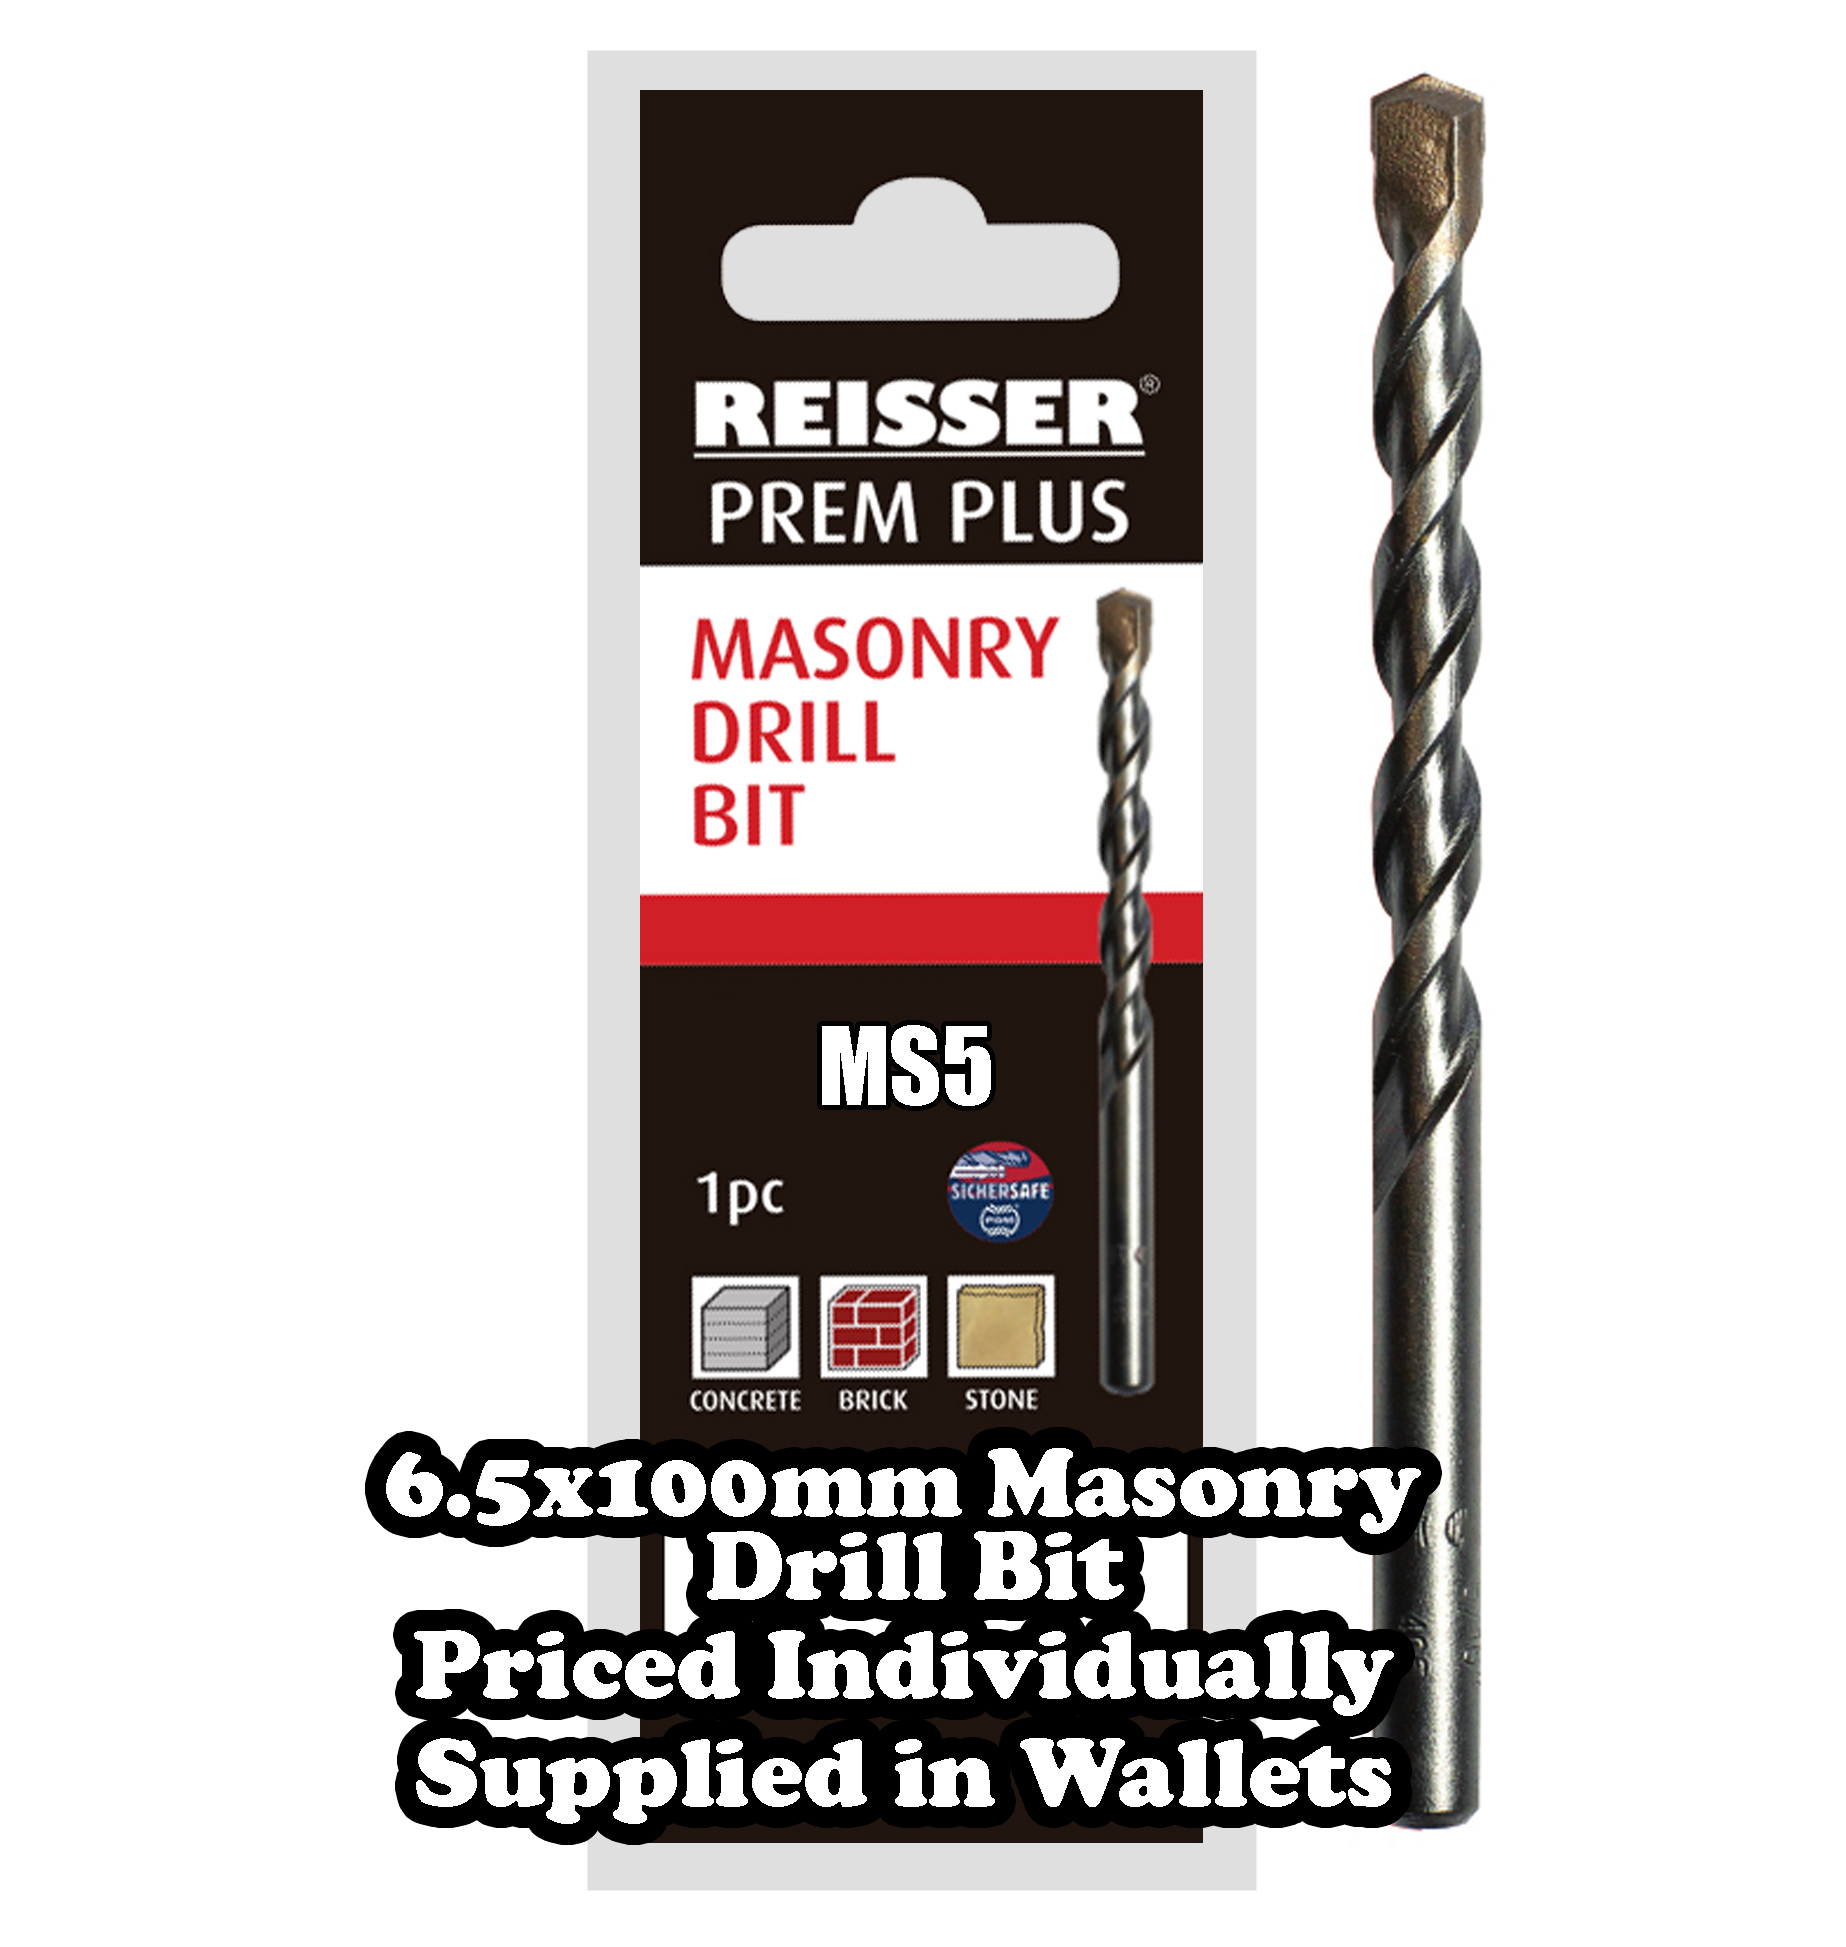 6.5mm x 100mm  Masonry Drill Bit